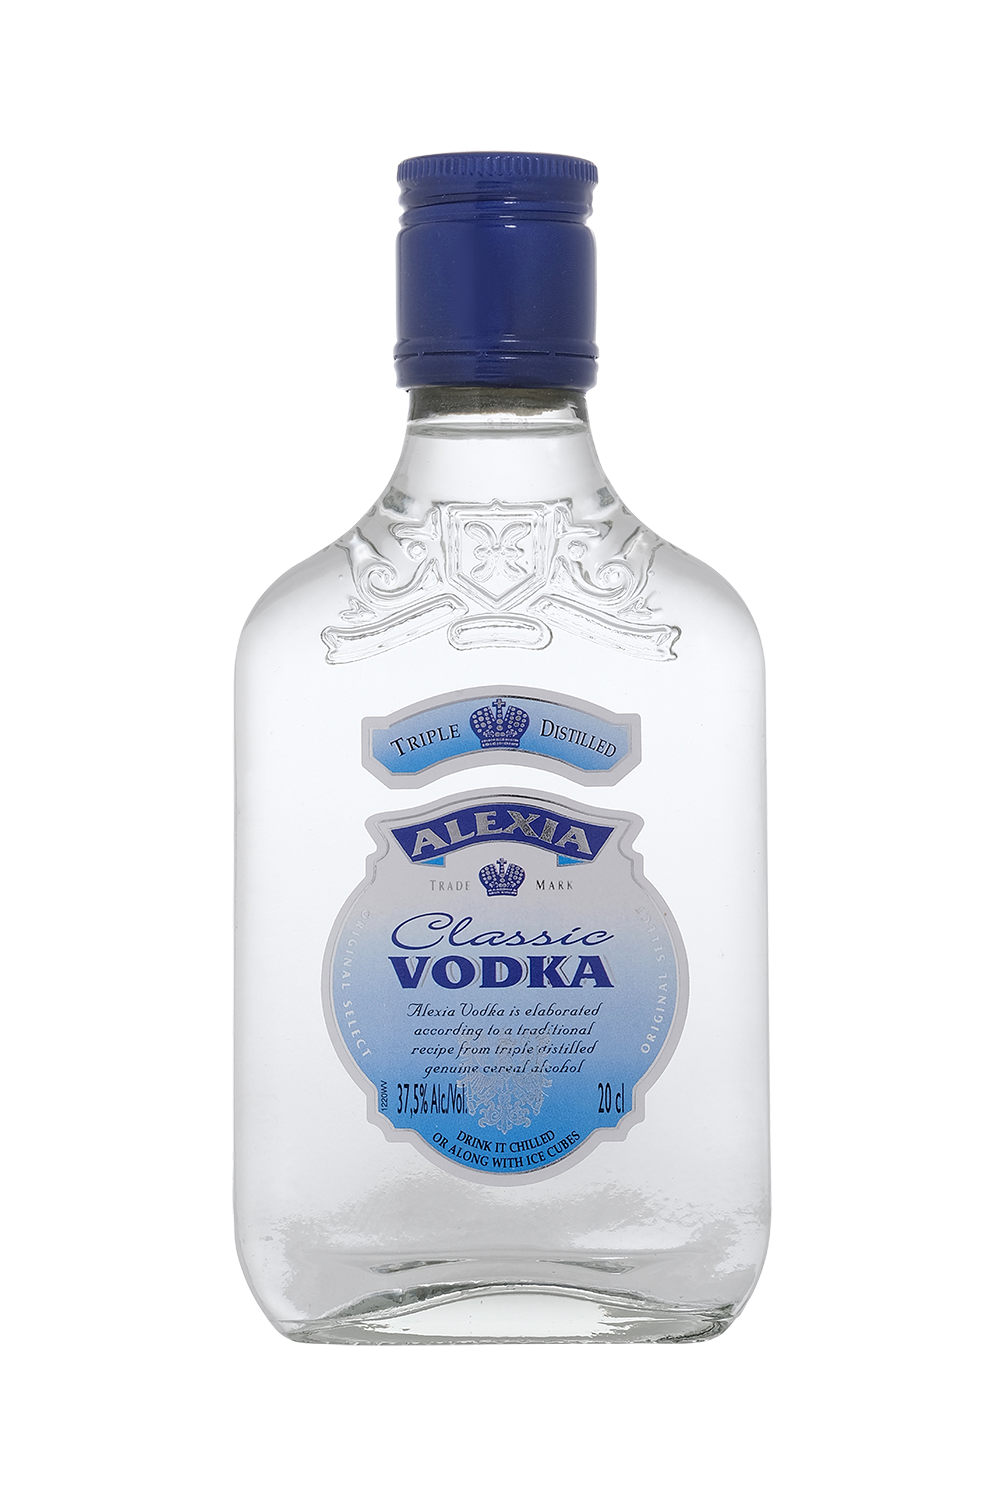 Vodka Classic Alexia 020 37.5 0V9L Web